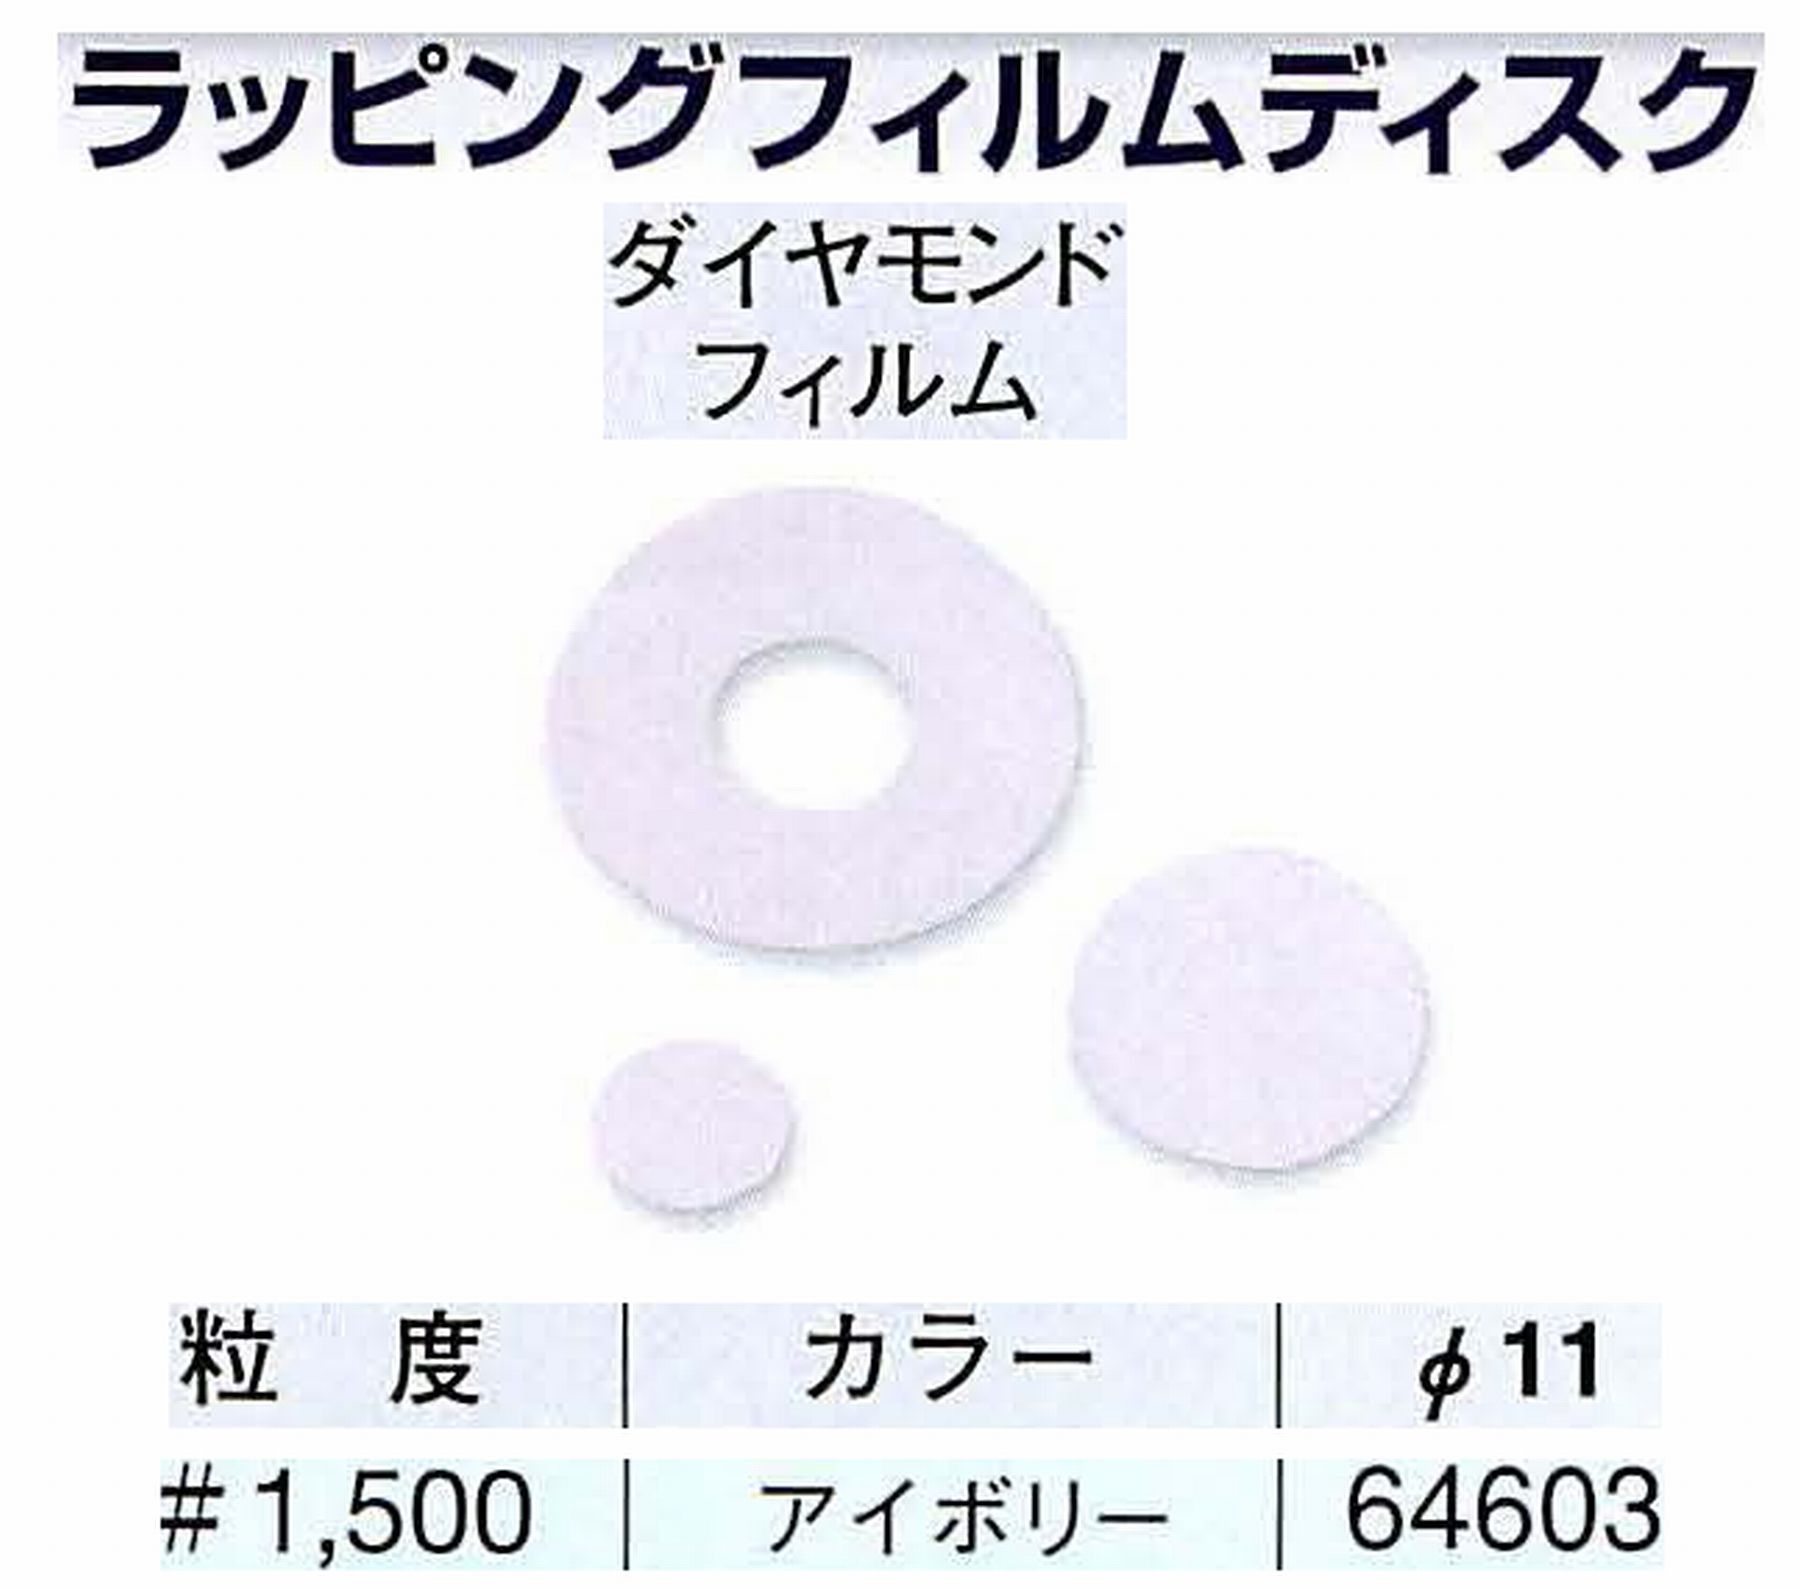 ナカニシ/NAKANISHI アングルグラインダ(電動・エアー) アングルアタッチメント専用工具 ラッピングフィルムディスク(ダイヤモンドフィルム) 64603